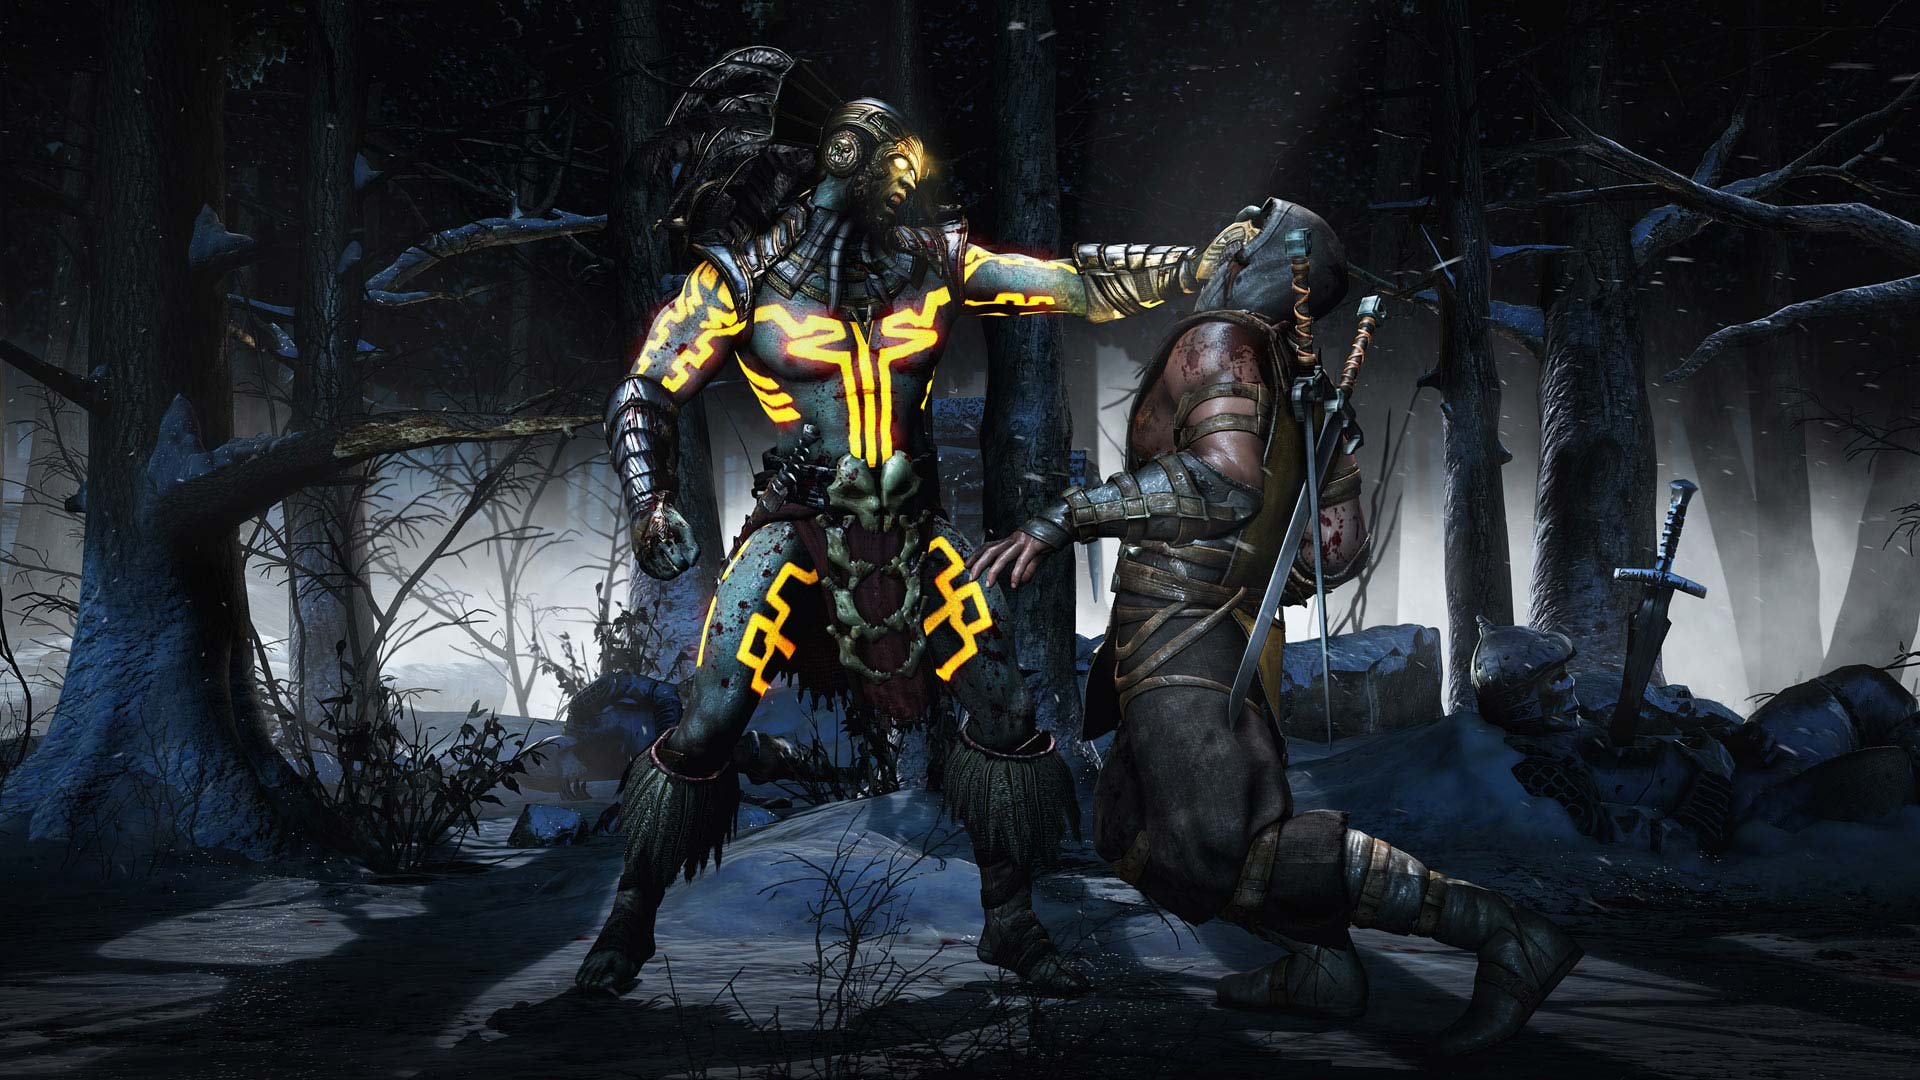 Mortal Kombat X - Será o mais sangrento dos games? - Heroi X